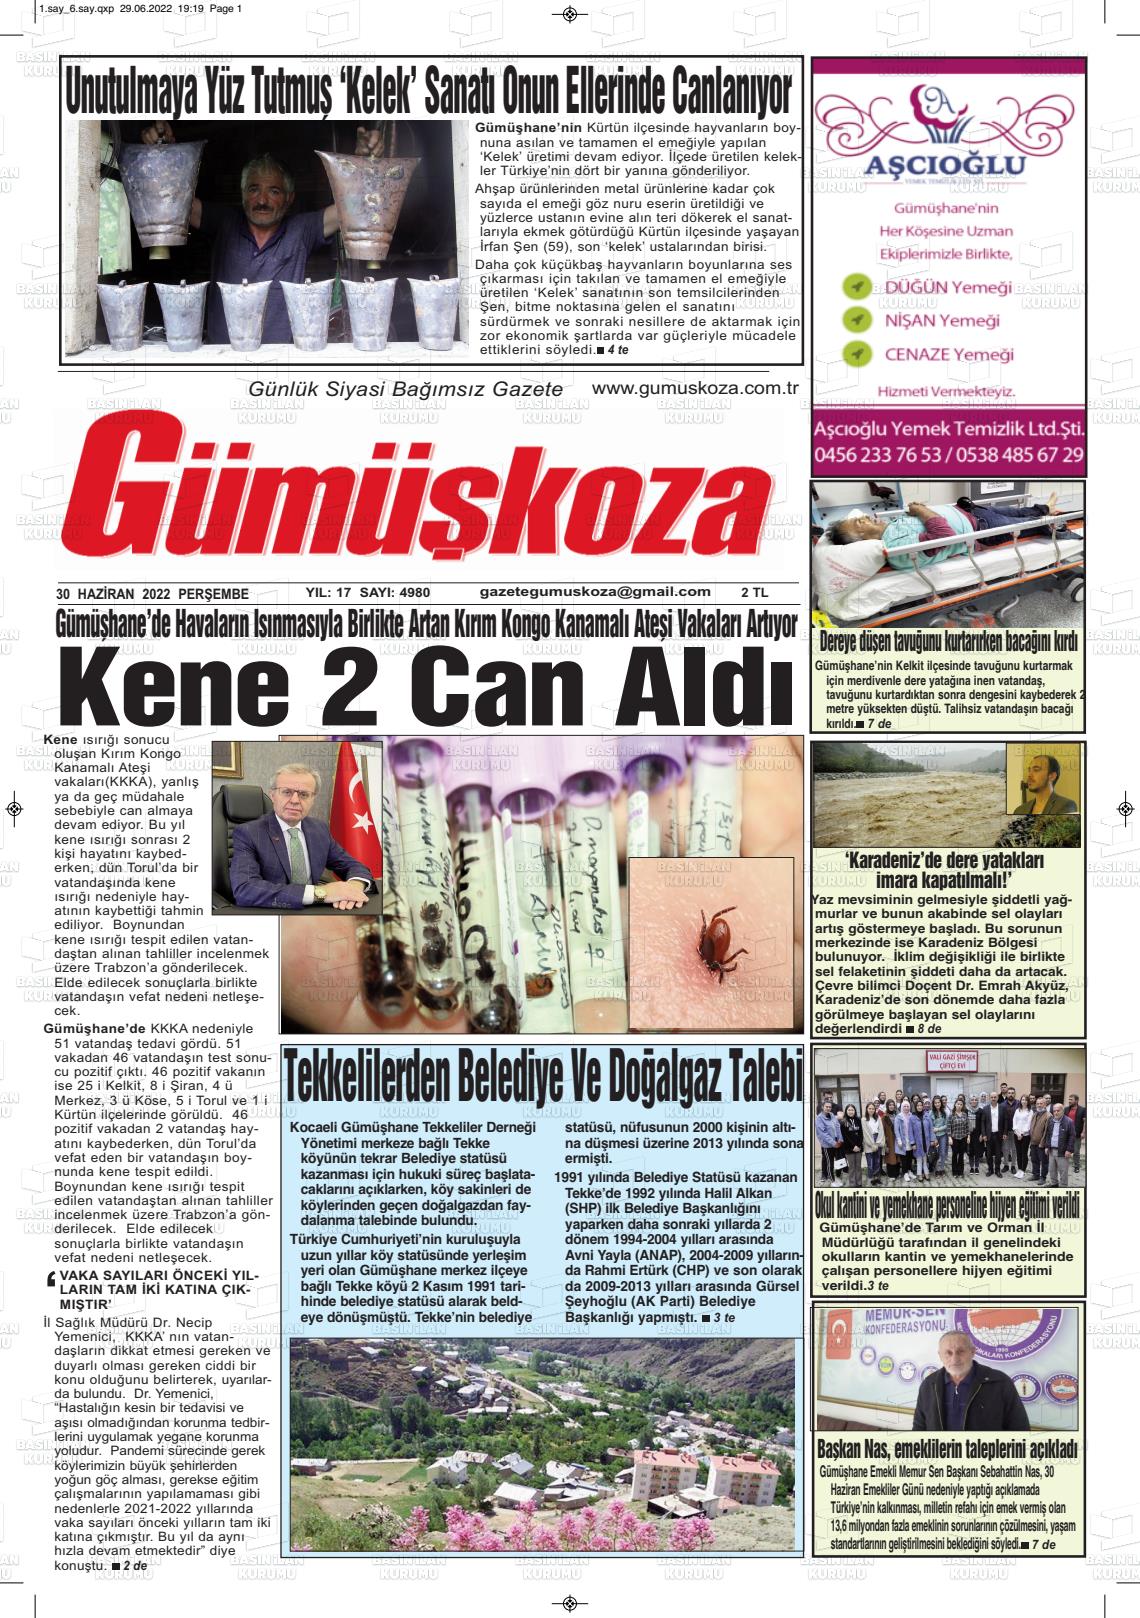 01 Temmuz 2022 Gümüşkoza Gazete Manşeti